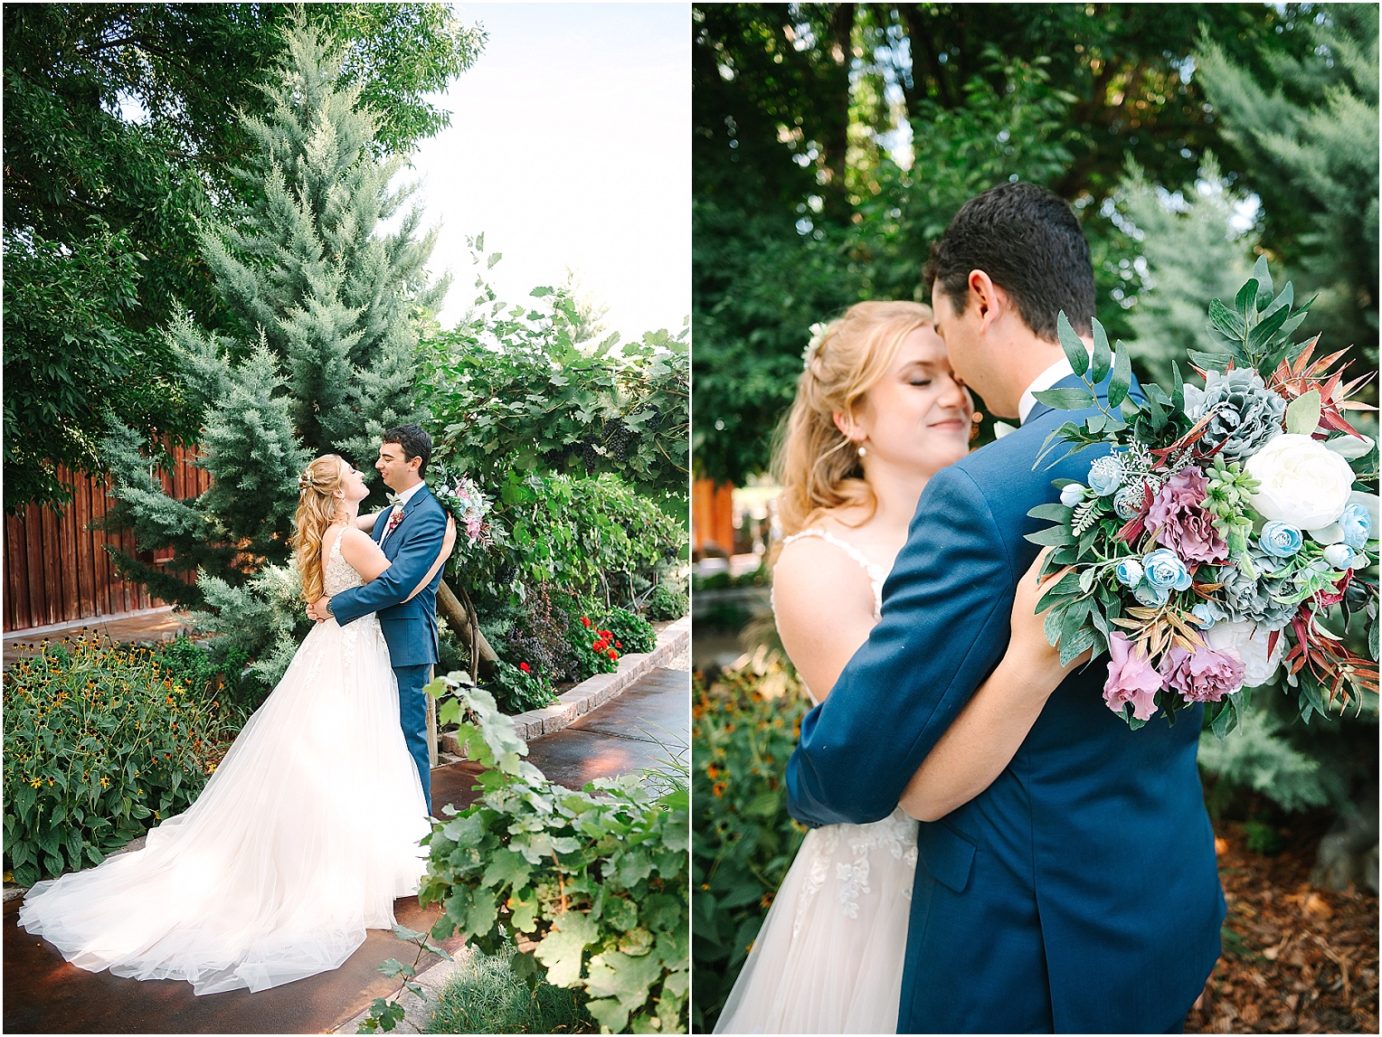 Wedding at Sugar Pine Barn - bride and groom hugging in garden area